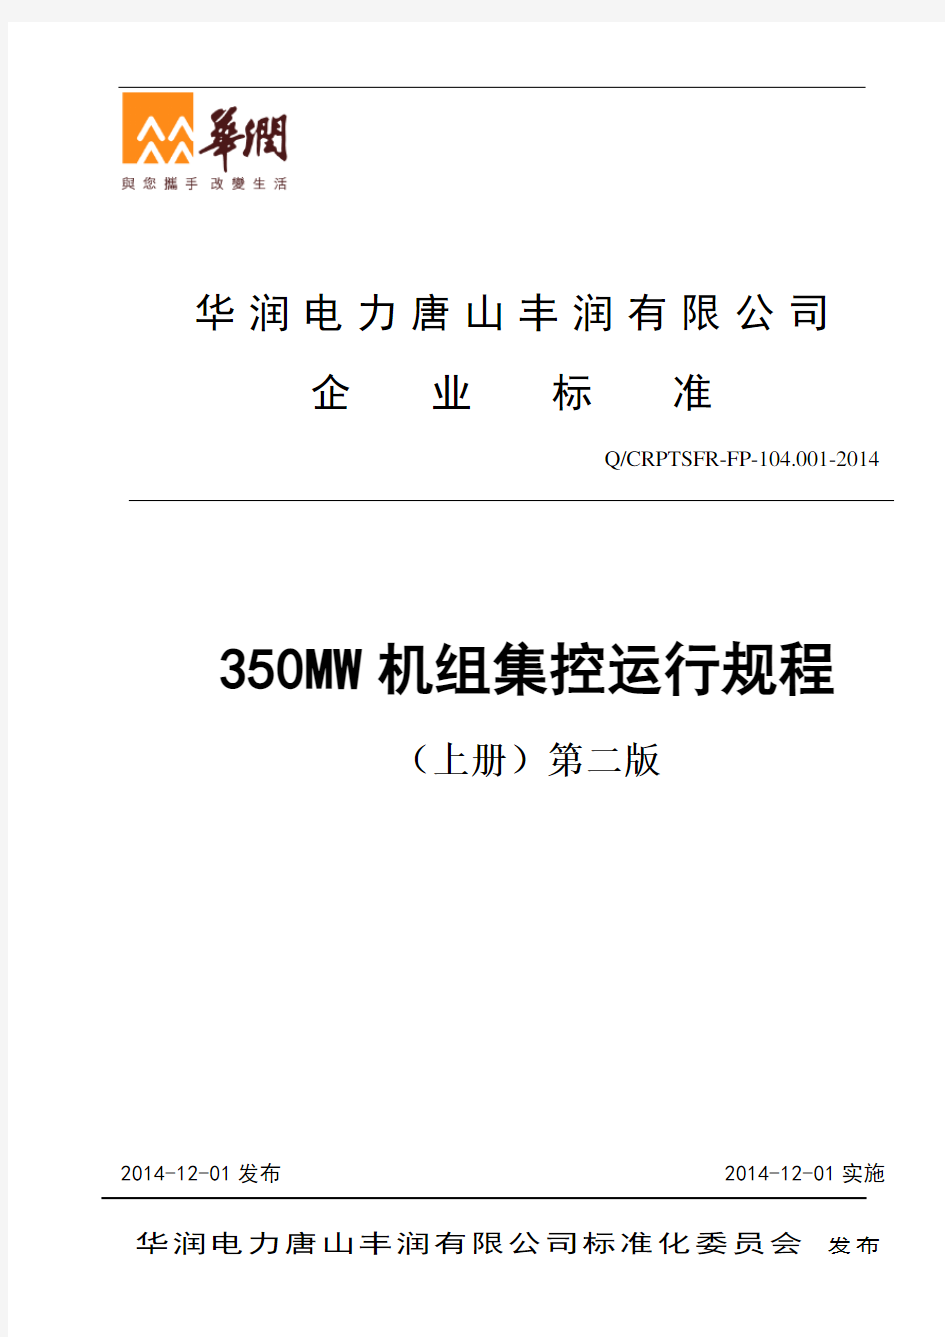 华润电力350MW机组集控运行规程-上册分析